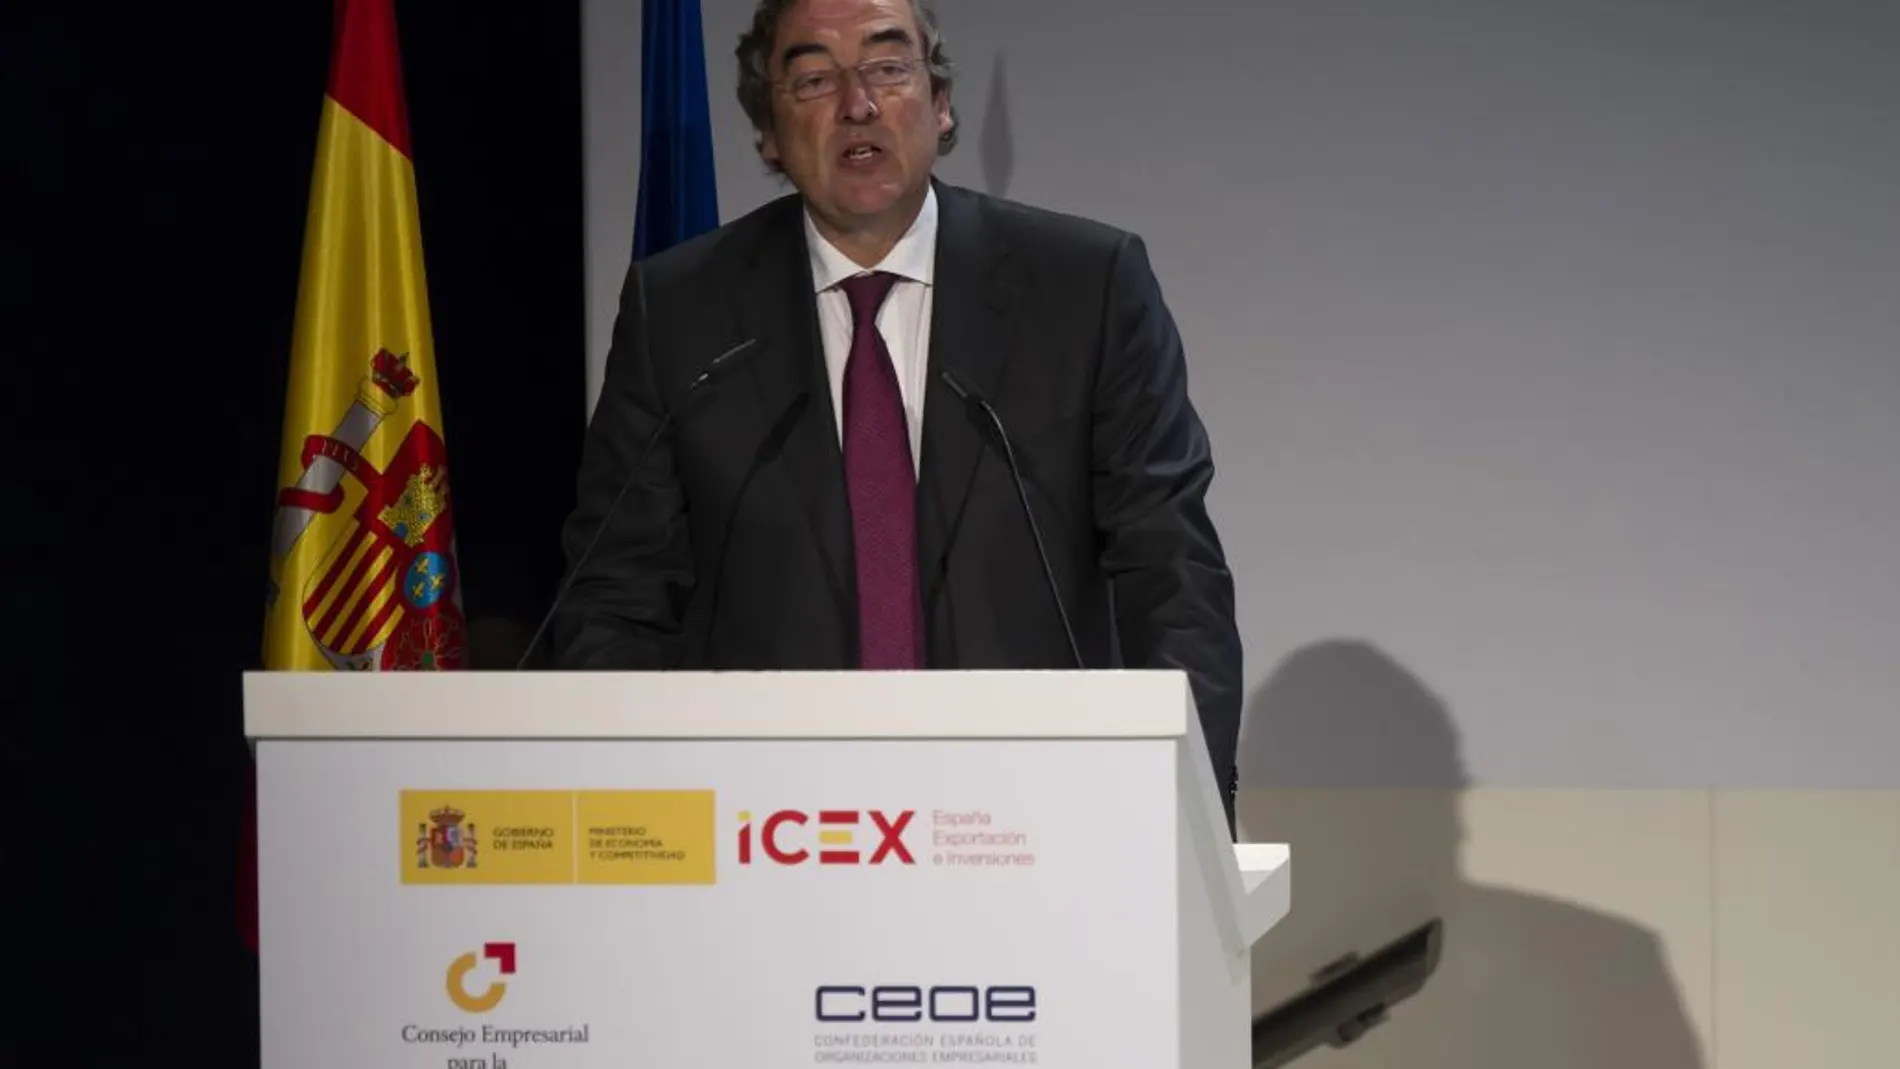 El presidente de la CEOE, Juan Rosell, califica de problema político de dimensión importante el desafío catalán